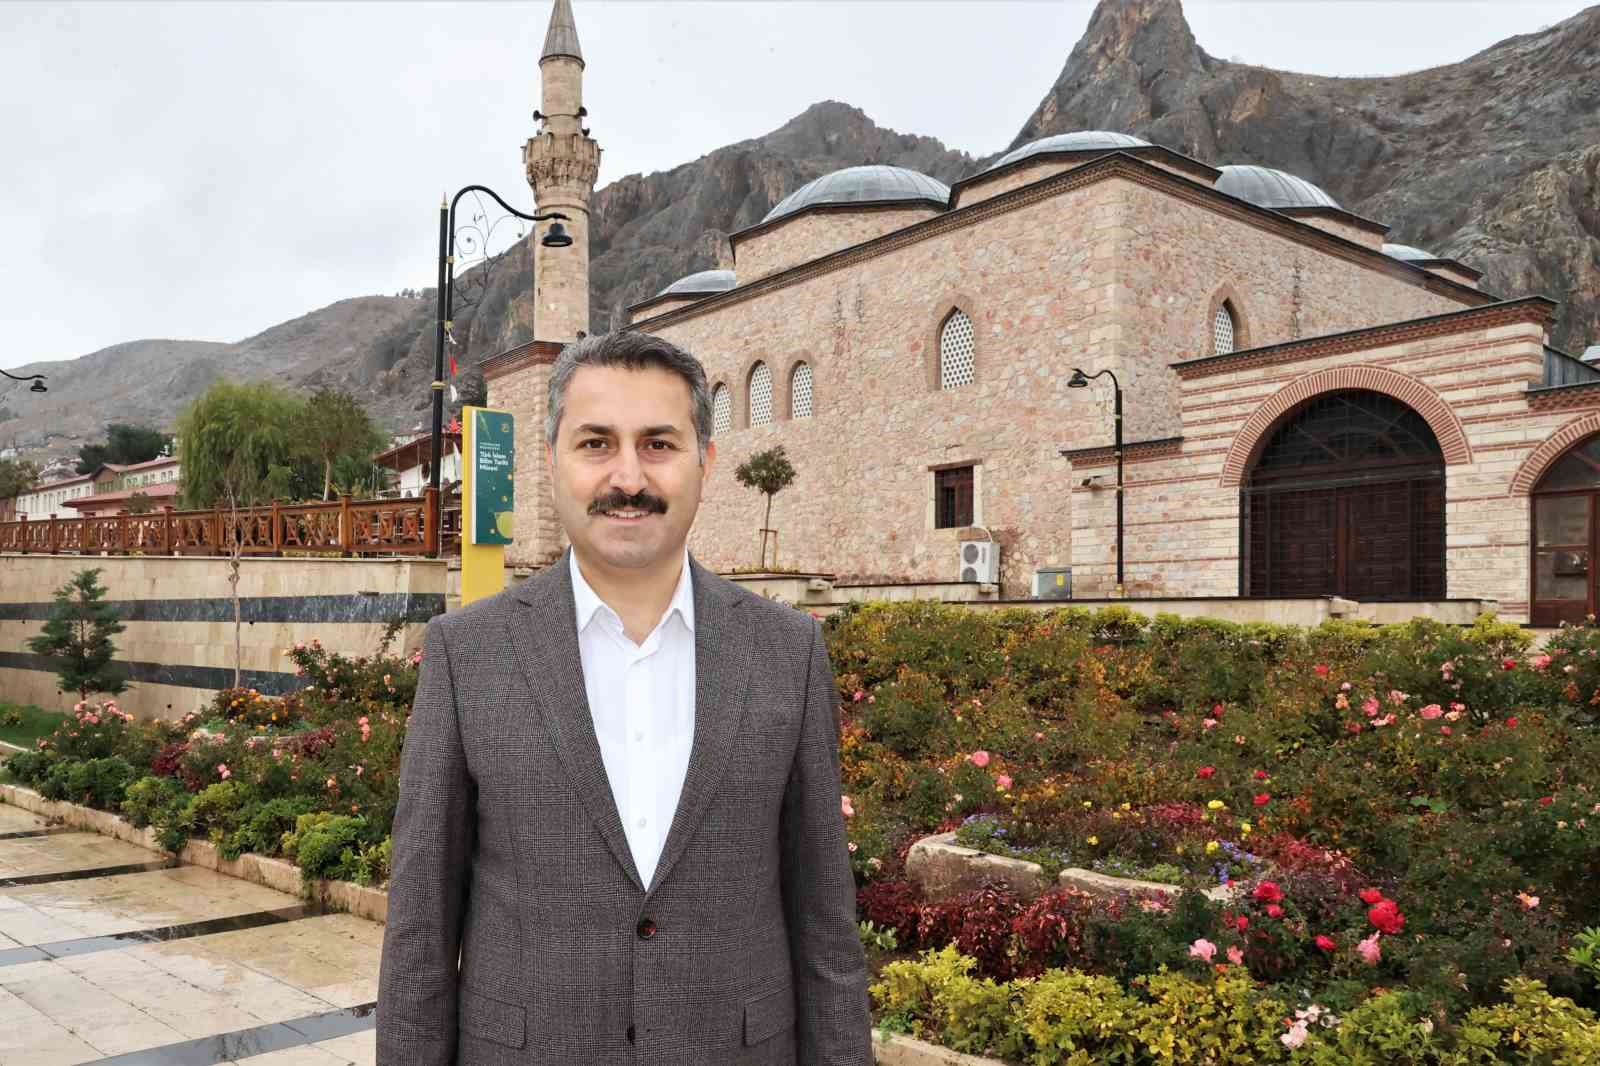 Başkan Eroğlu: “Turist sayımız her geçen yıl artıyor”